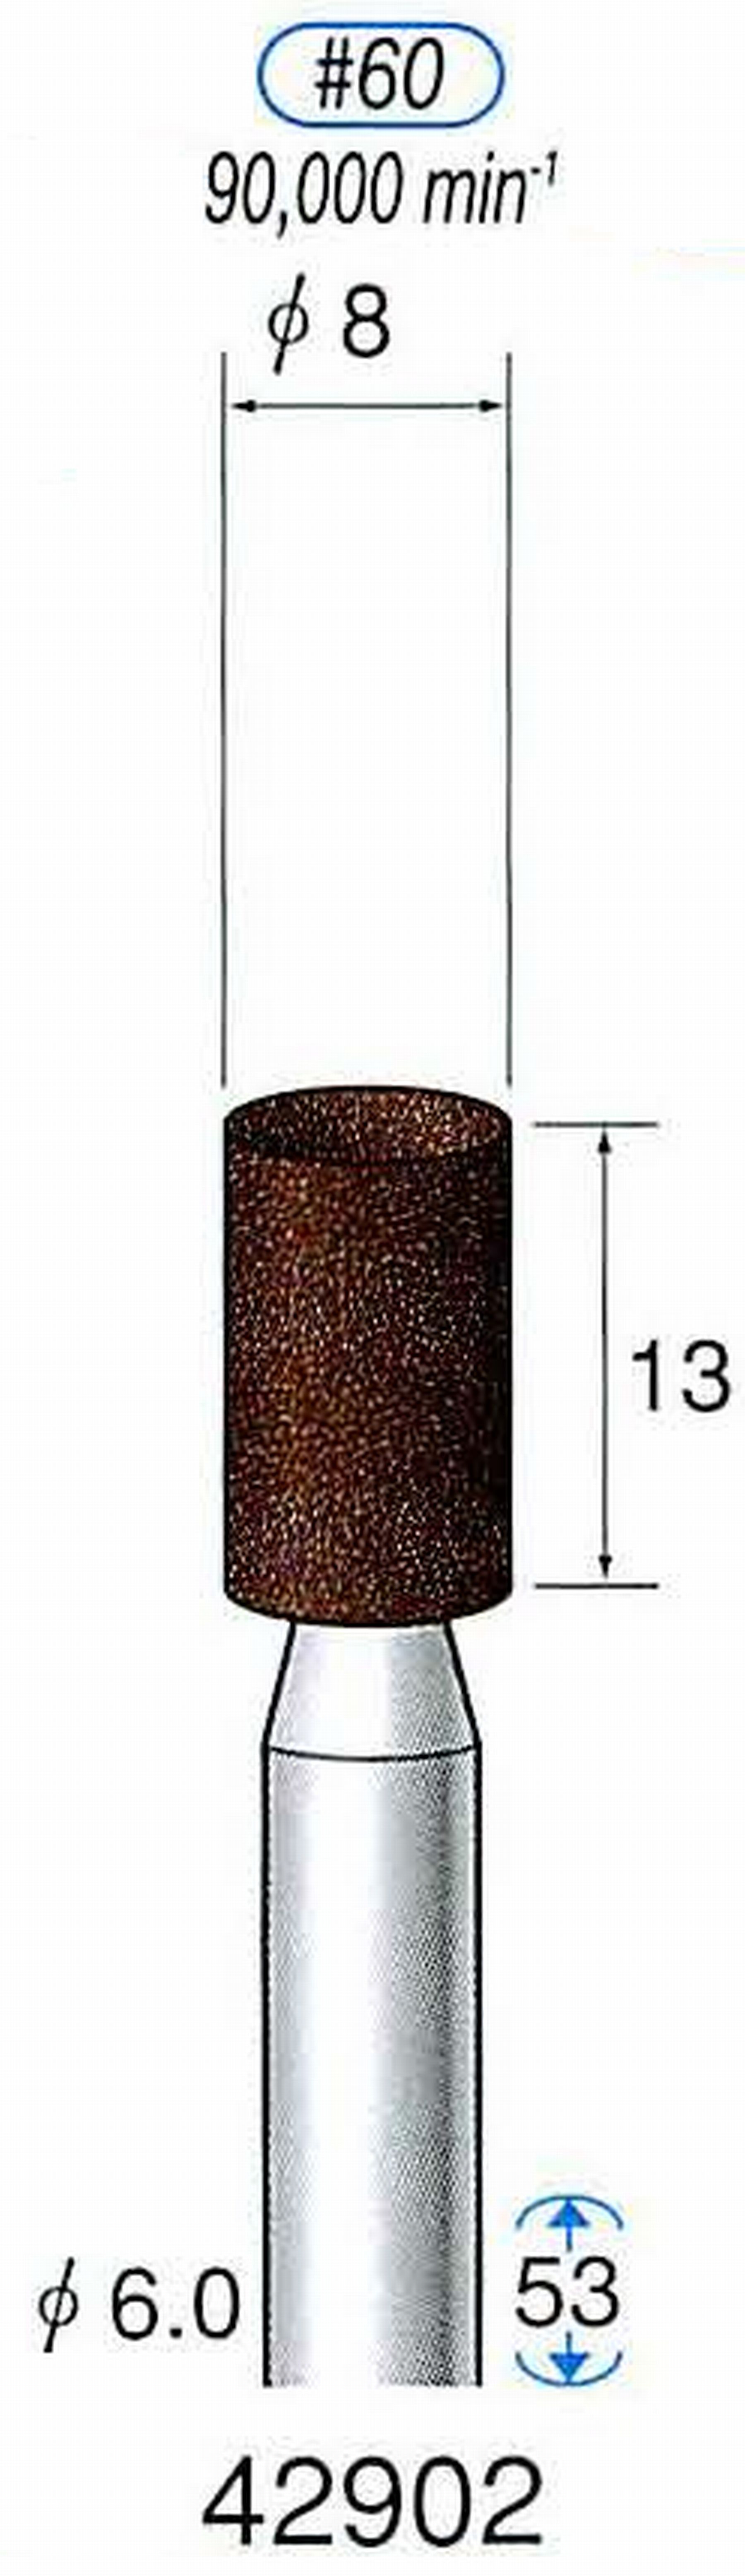 ナカニシ/NAKANISHI 軸付砥石(A・WA砥粒) ブラウン砥石 軸径(シャンク) φ6.0mm 42902